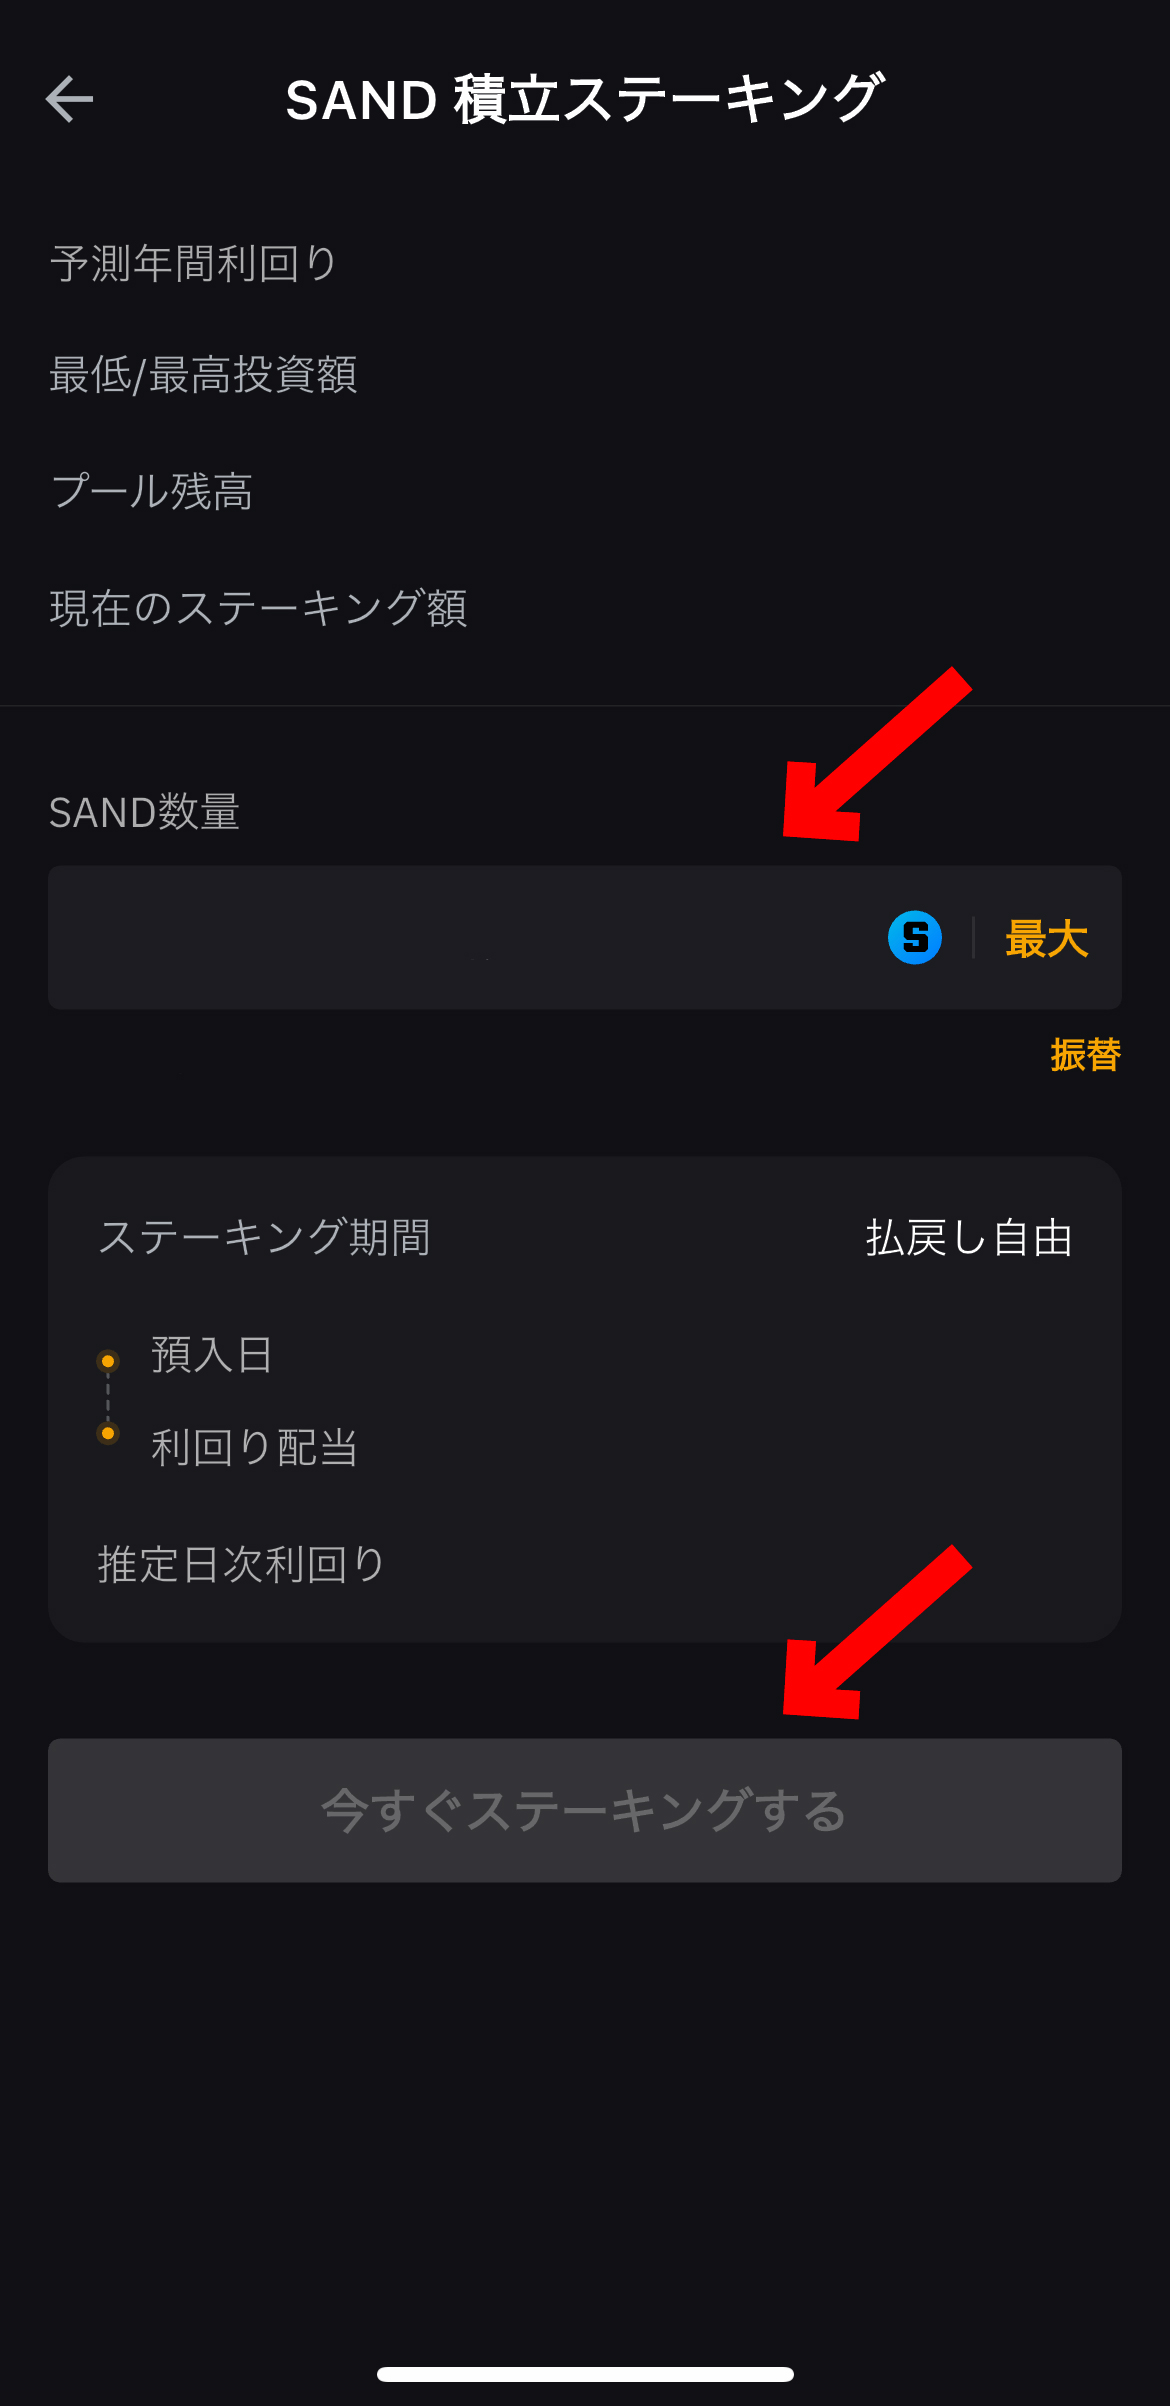 仮想通貨サンドボックスの買い方、ステーキング方法【SAND】【The Sandbox】【Bybit】【バイビット】今すぐステーキングするを選択します